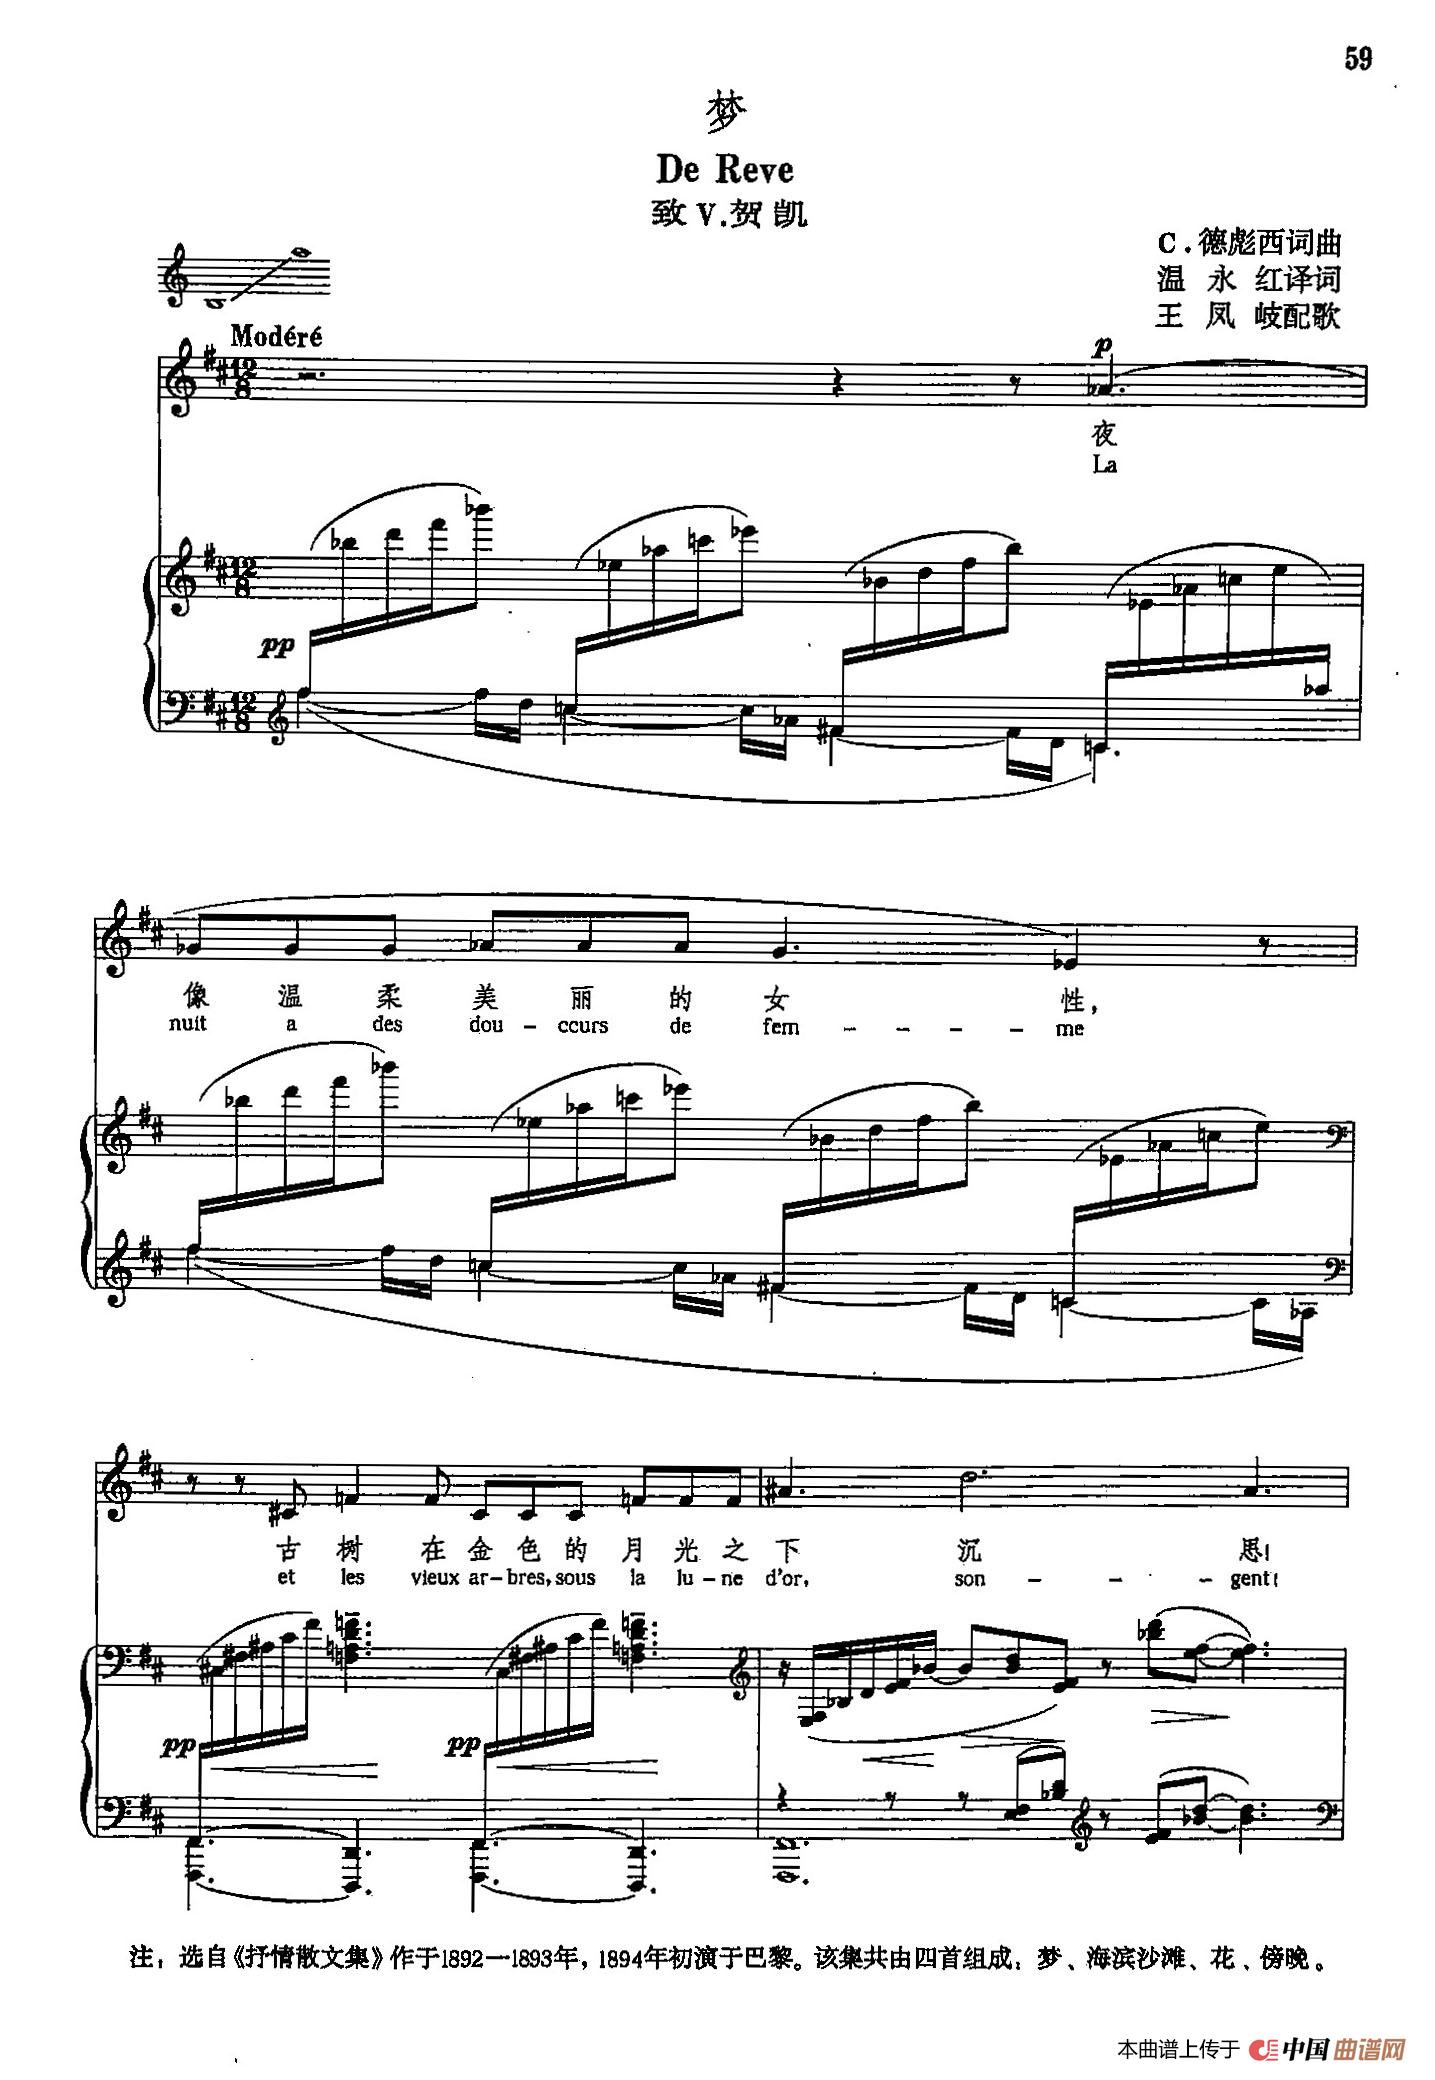 声乐教学曲库5-12梦（正谱）(1)_原文件名：声乐教学曲库5-12梦（正谱）1.jpg